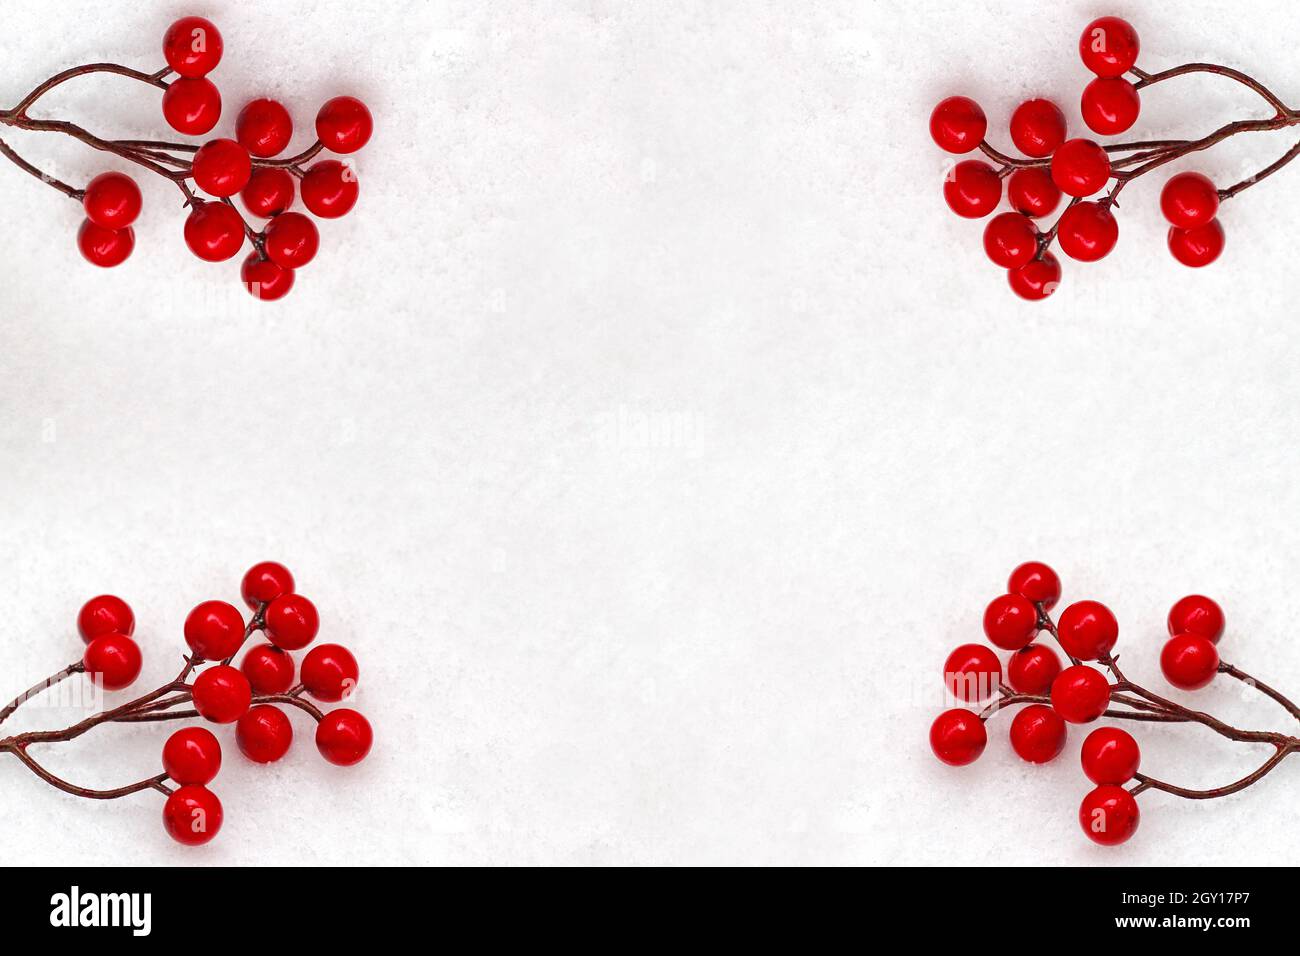 Bacche rosse su sfondo nevoso. Idee per il periodo di natale. Foto Stock